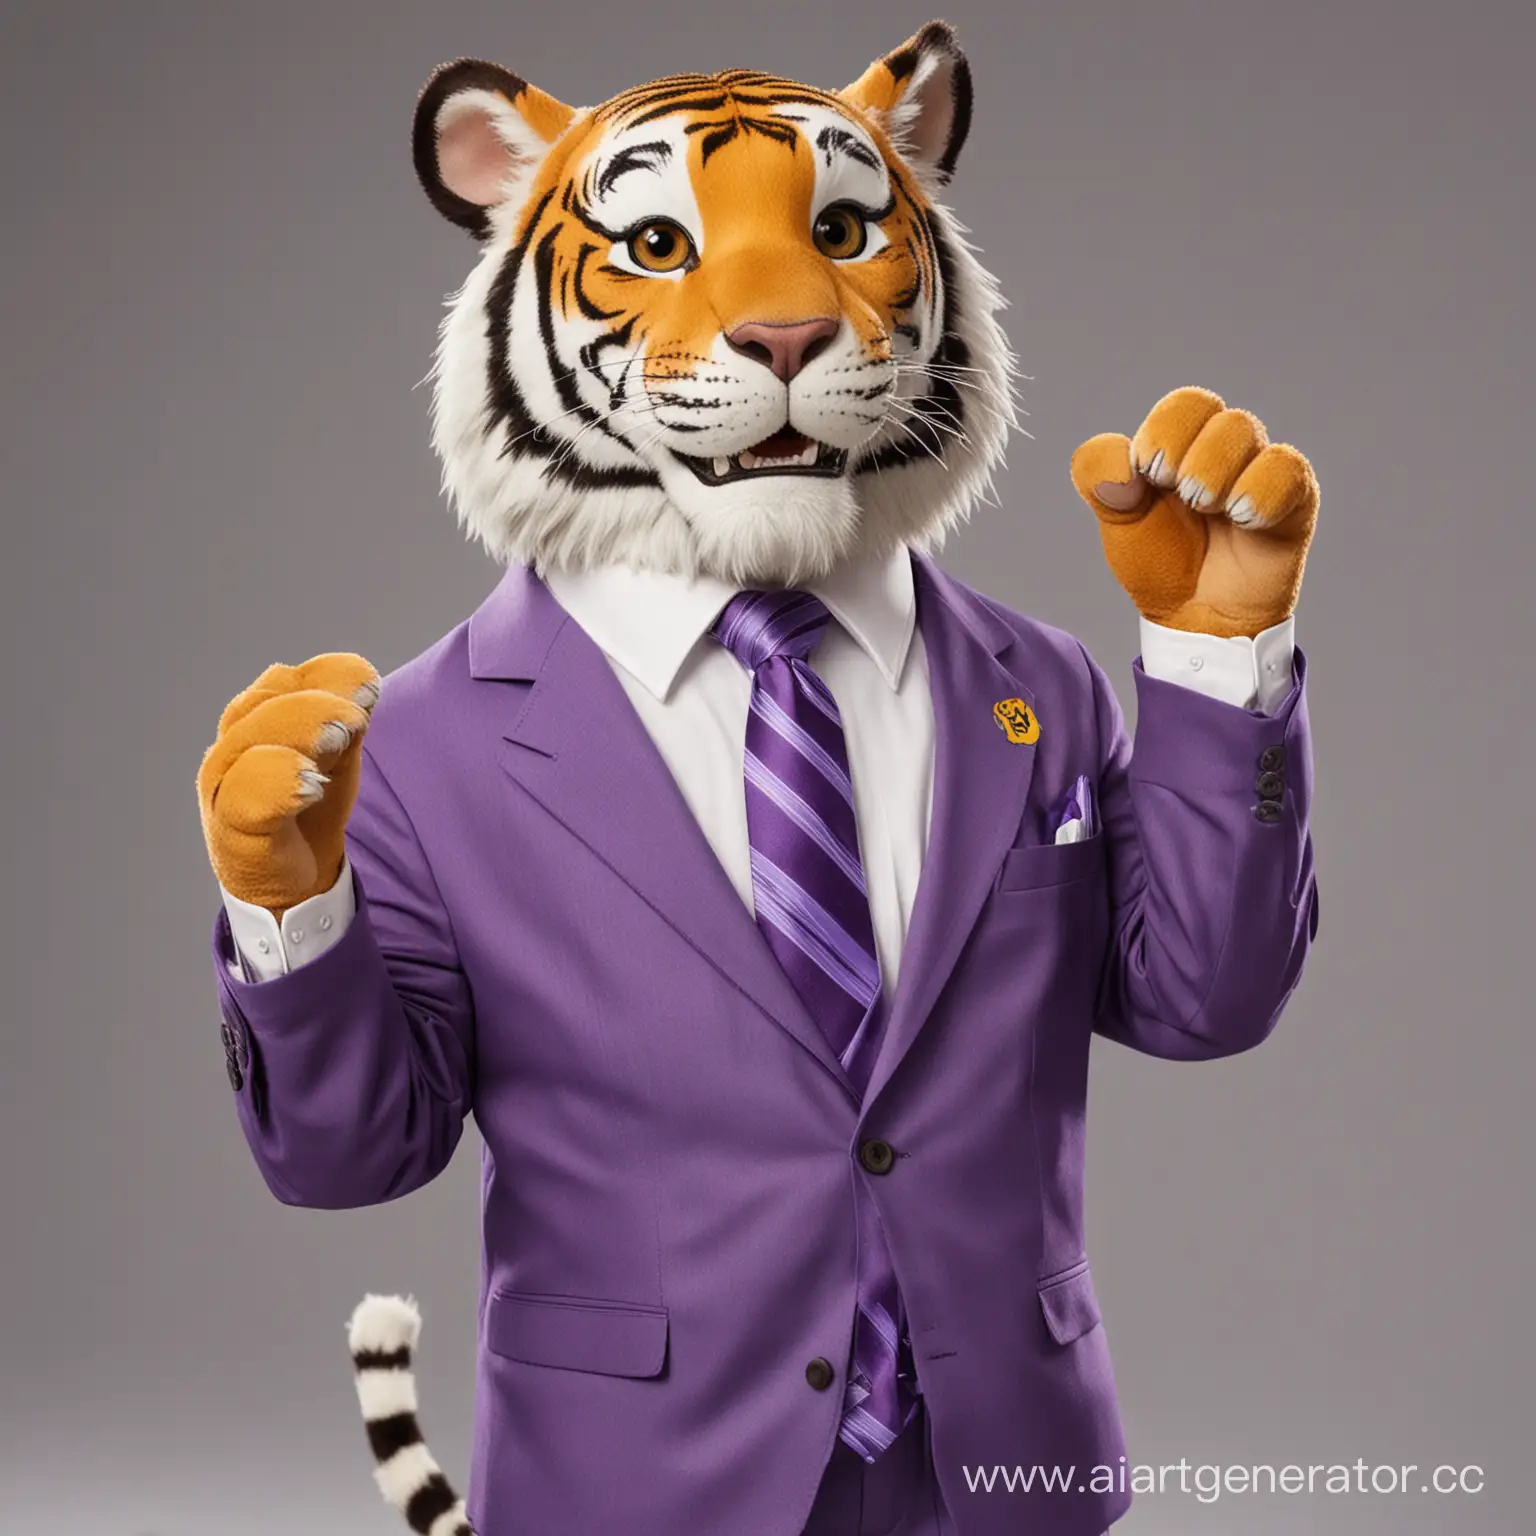 Тигр, который является представителем банка. В полный рост. На нем фиолетовый галстук, он улыбается, машет лапой